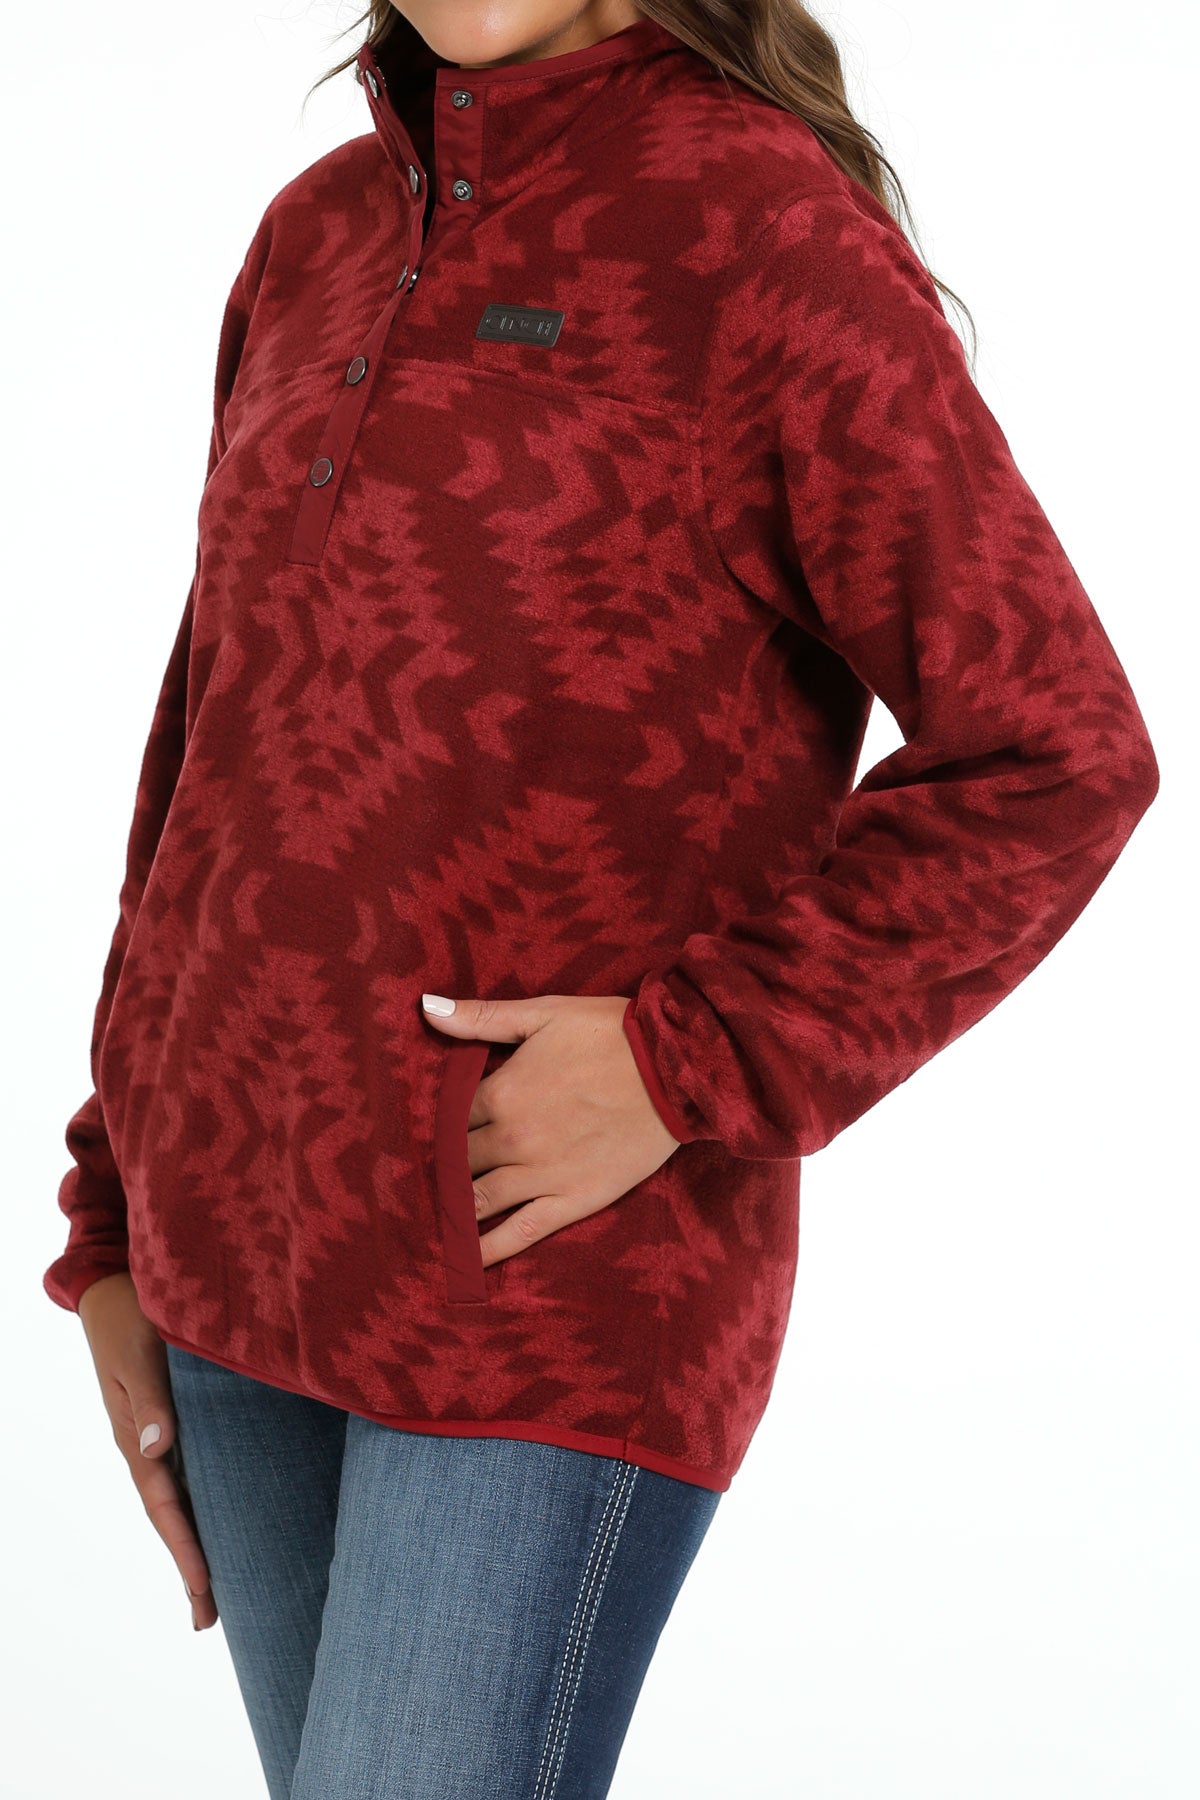 Fleece Sweater Red Aztec Print